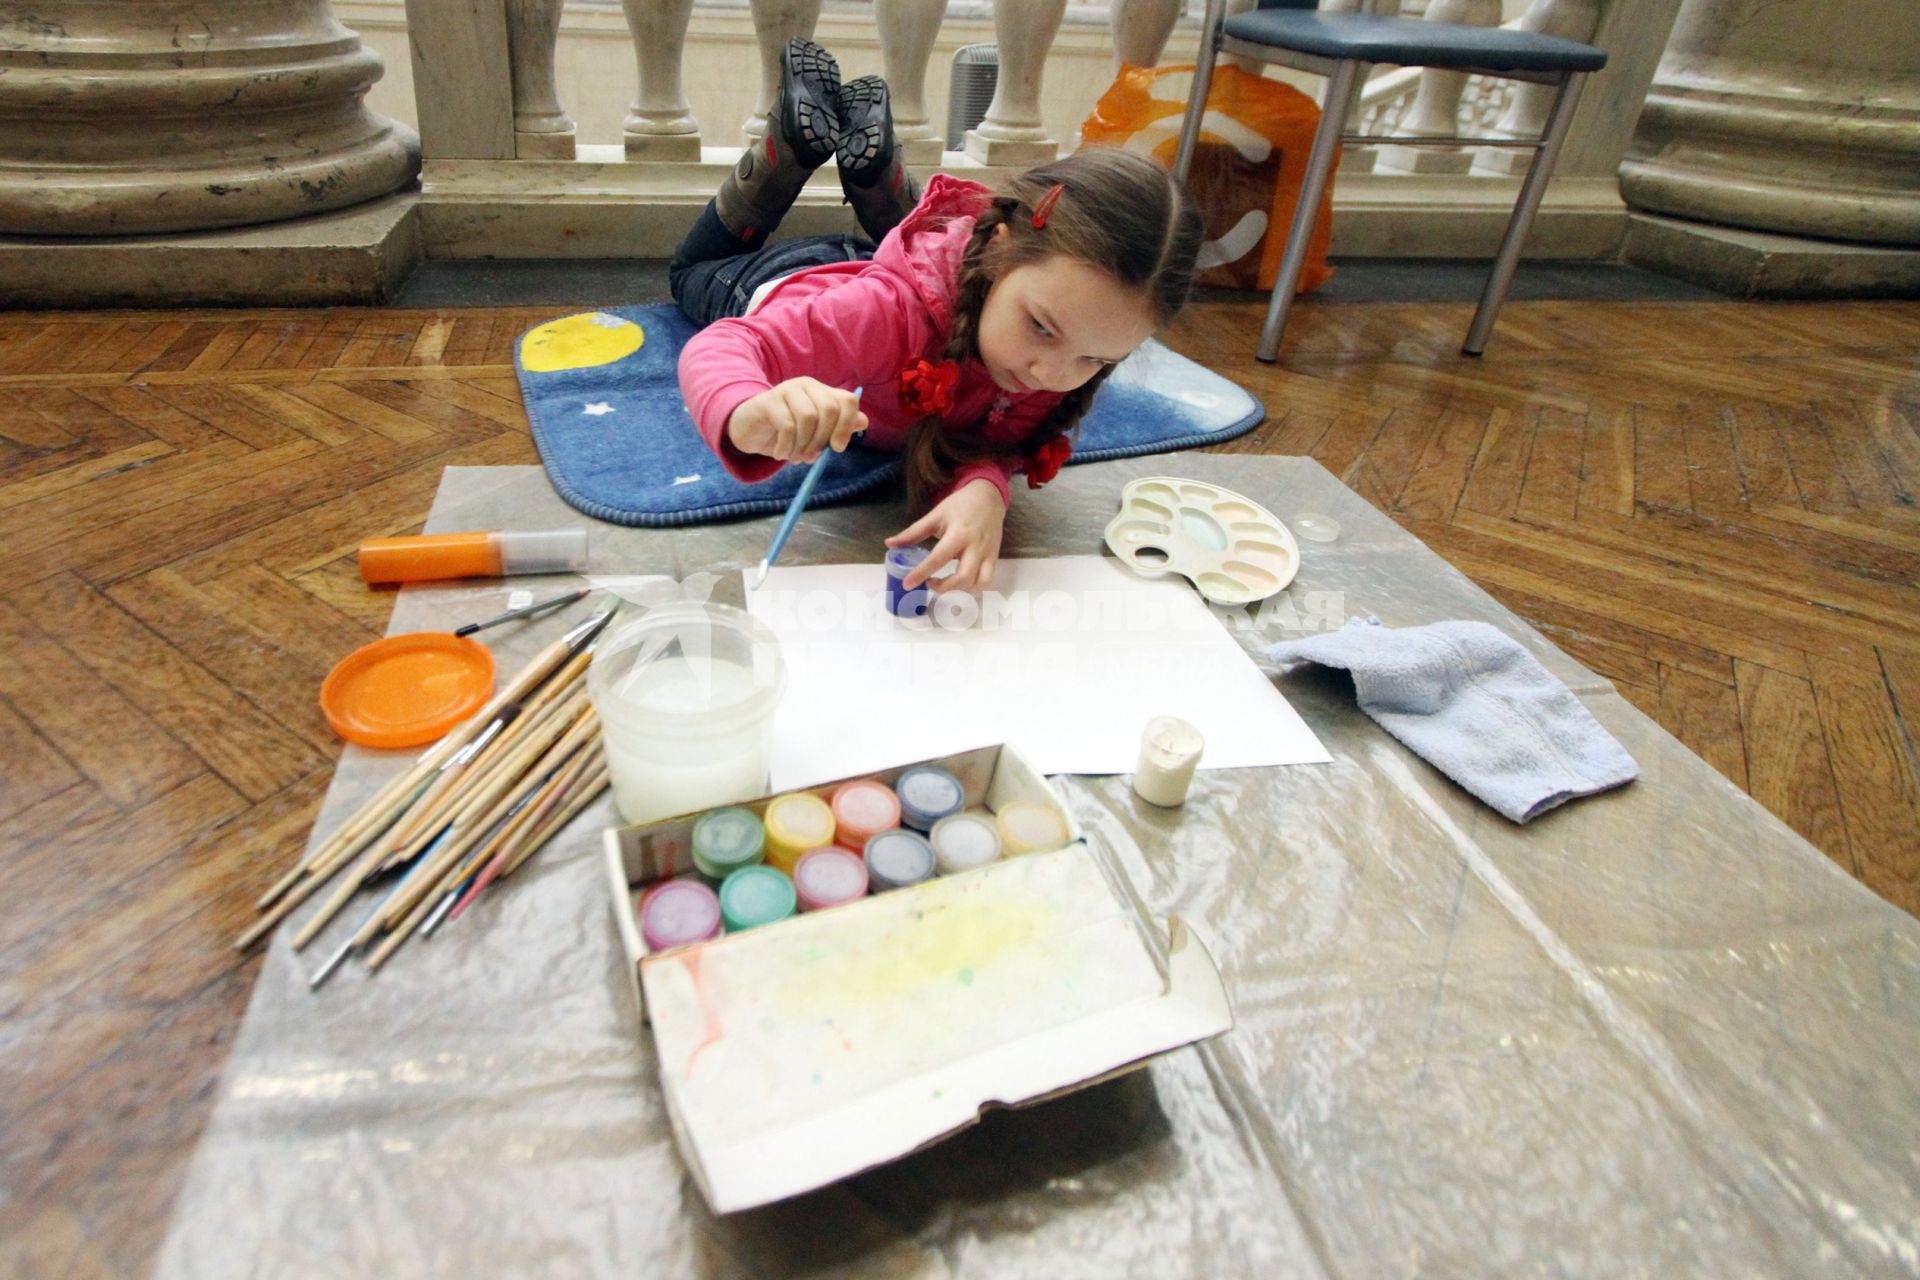 Учащиеся народной художественно-образовательной студии `В гости к Тюбику` при Национальном художественном музее Беларуси рисуют картины на практических занятиях в выставочных залах музея.